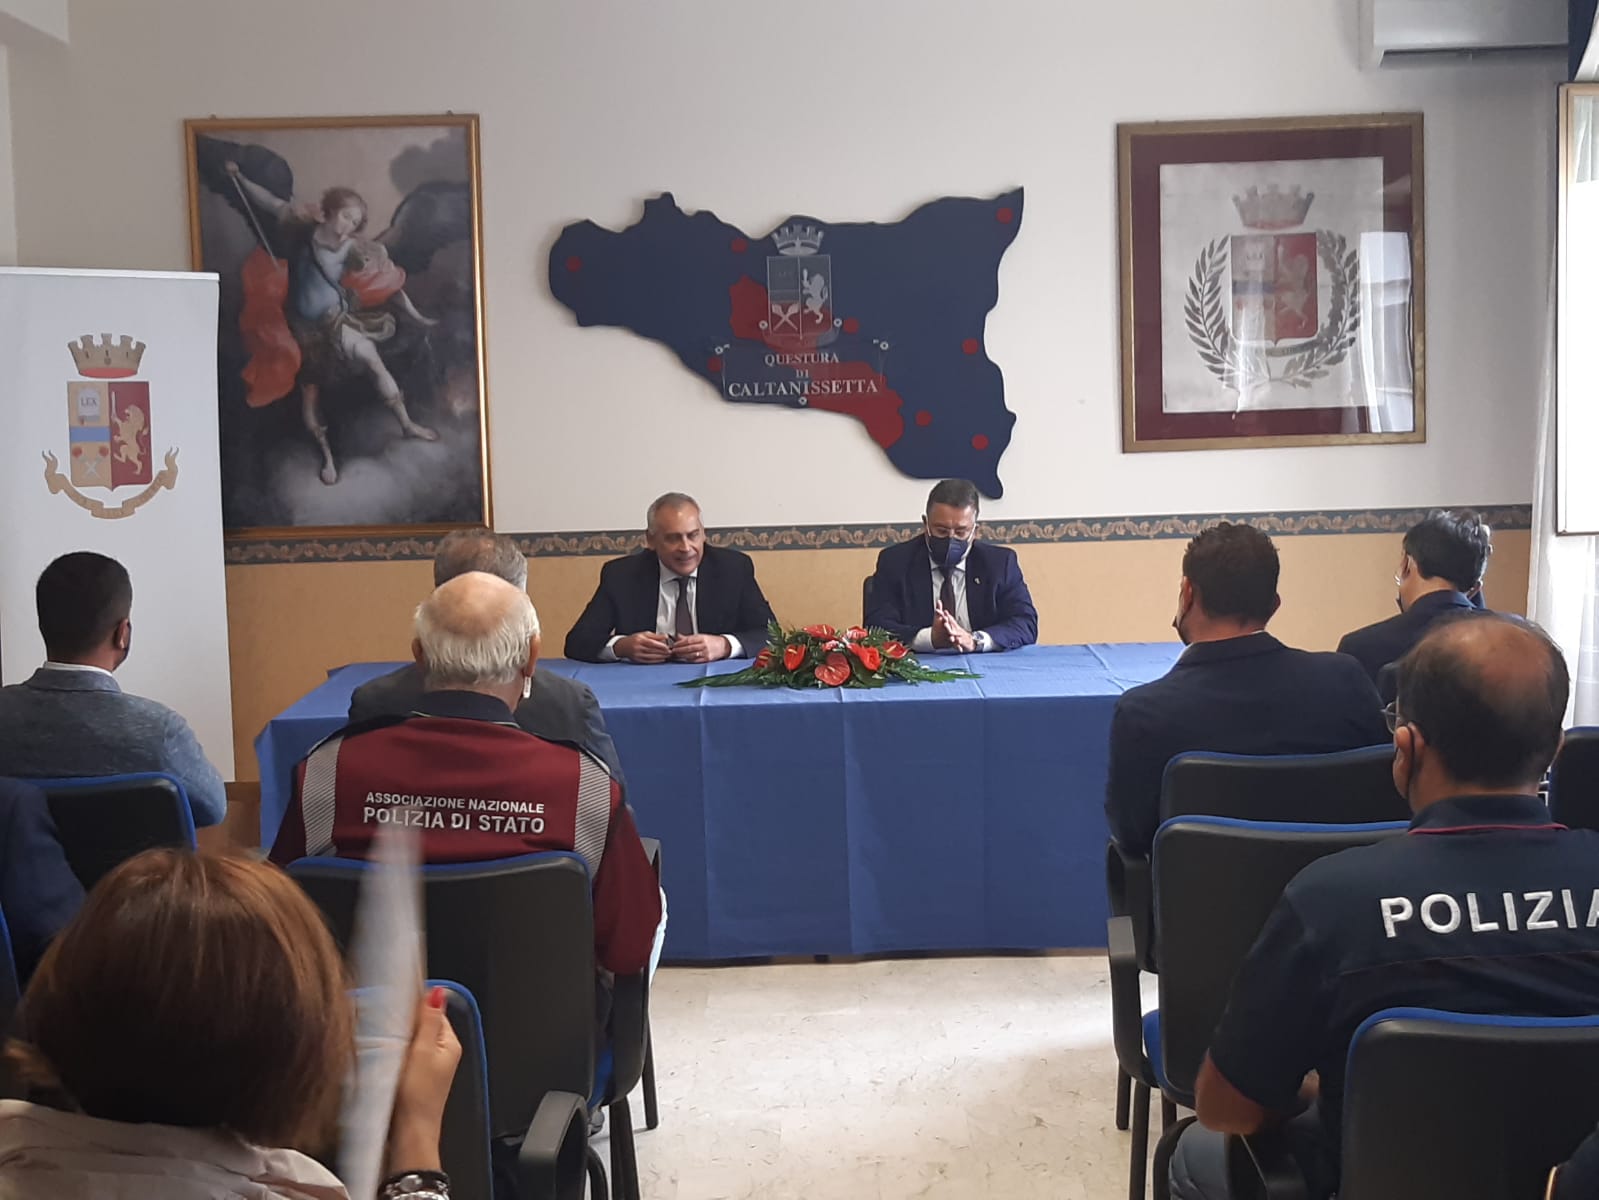 Il Capo della Polizia – Direttore Generale della pubblica sicurezza, Prefetto Lamberto Giannini in visita nella provincia di Caltanissetta.